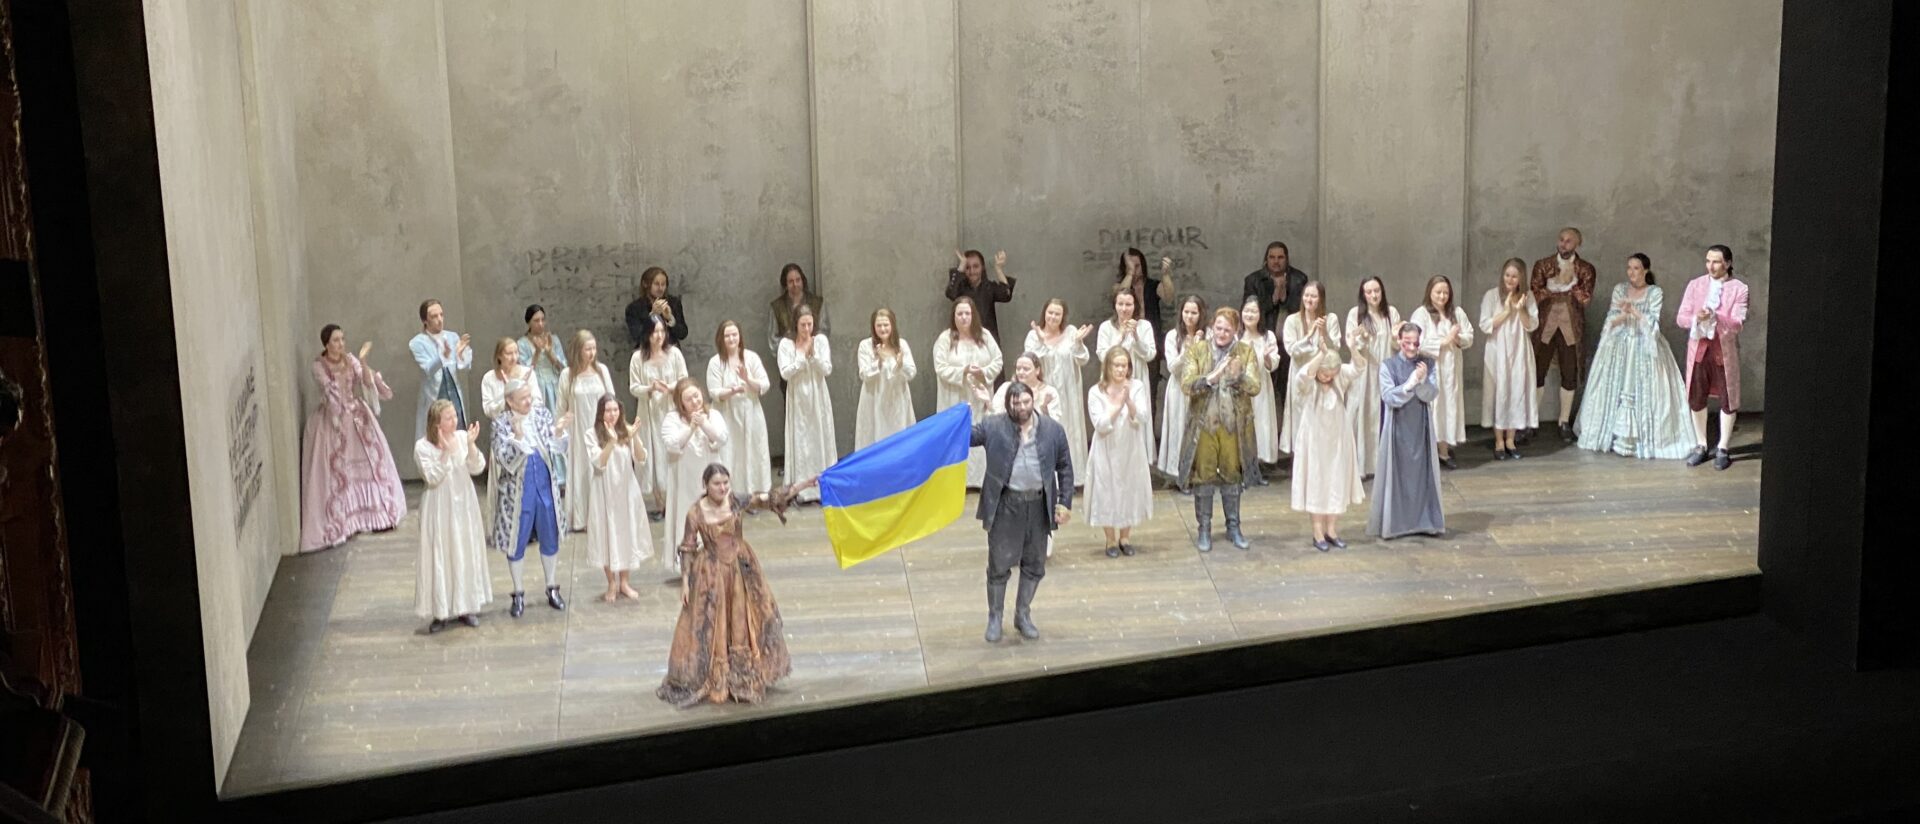 Olga Kulchynska und Valeriy Murga erscheinen zum Schlussapplaus am Opernhaus Zürich mit der ukrainischen Flagge.